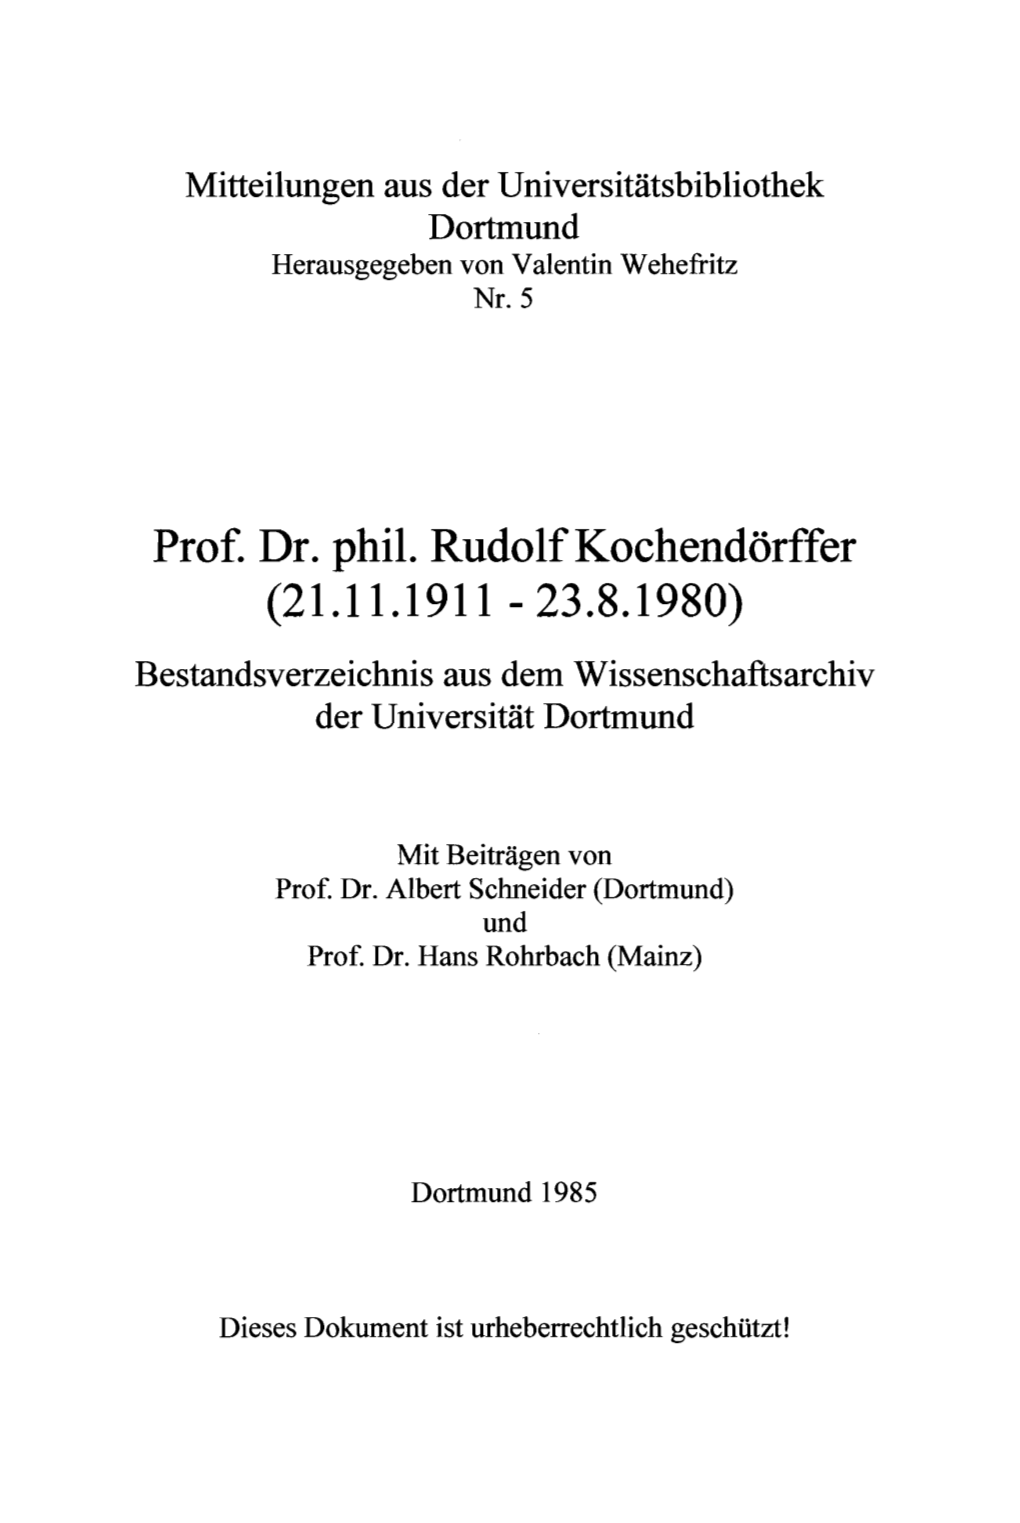 Prof. Dr. Phil. Rudolfkochendörffer (21.11.1911 - 23.8.1980) Bestandsverzeichnis Aus Dem Wissenschaftsarchiv Der Universität Dortmund